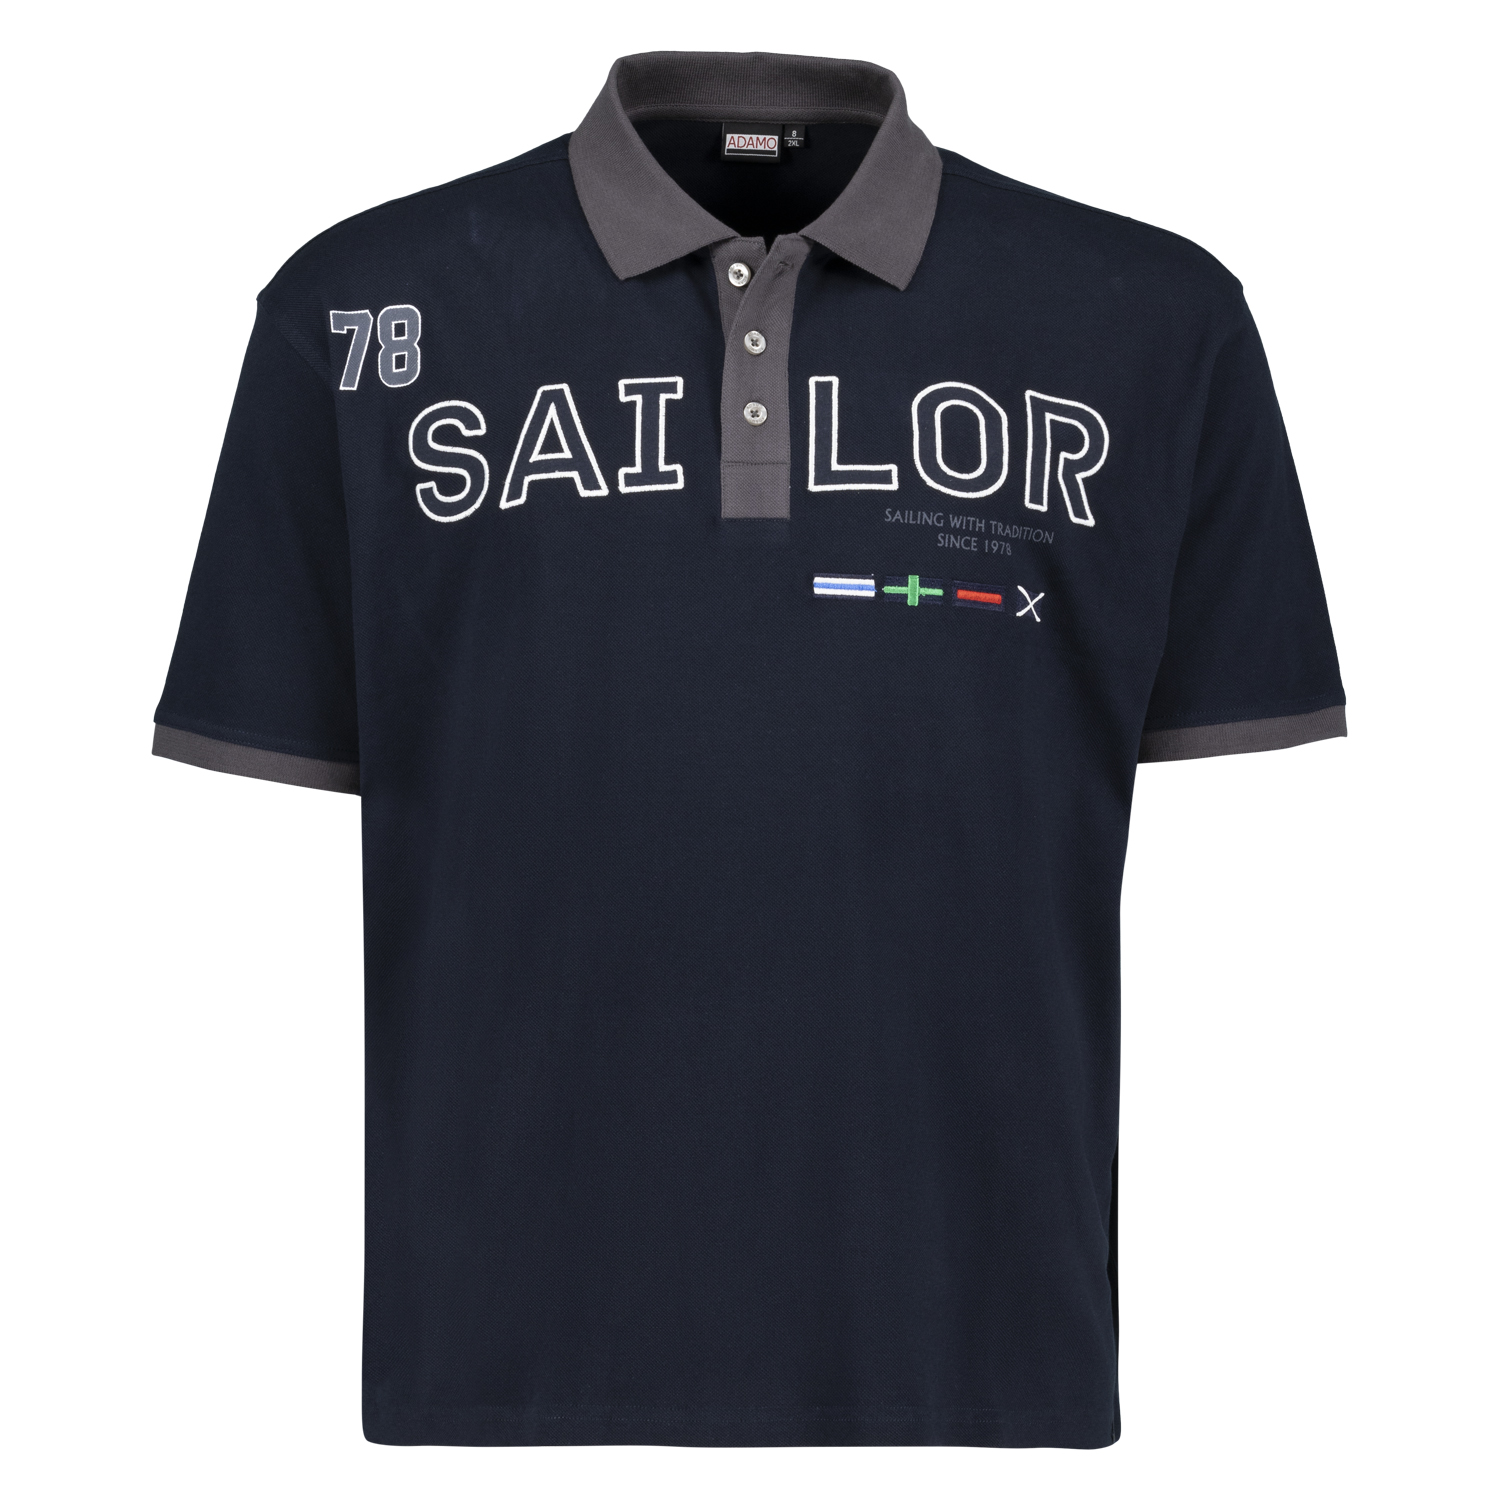 Kurzarm Polo Shirt in navy Serie SAILOR mit Print und Stickerei von ADAMO in Pique Qualität für Herren in großen Größen bis 10XL